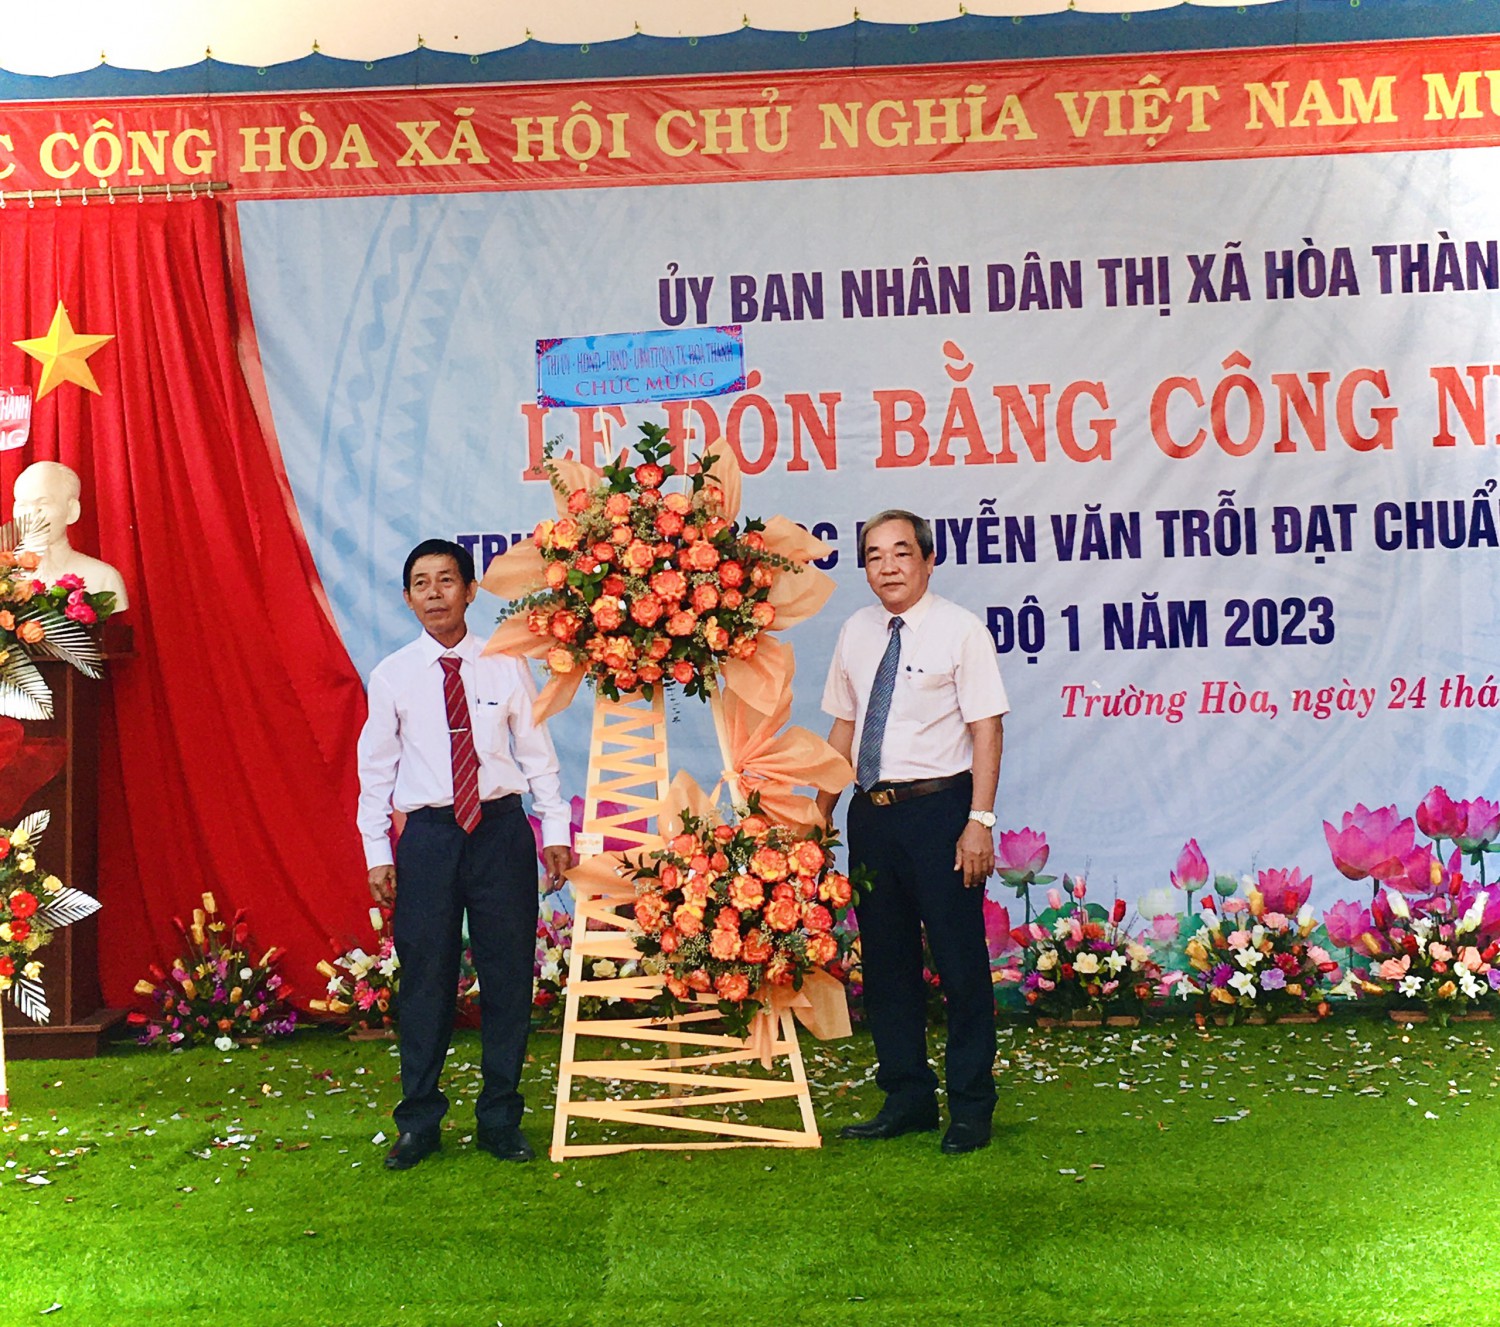 Ông Nguyễn Văn Phong - Phó Bí thư Thường trực Thị ủy, Chủ tịch HĐND thị xã Hòa Thành gửi lẵng hoa chúc mừng